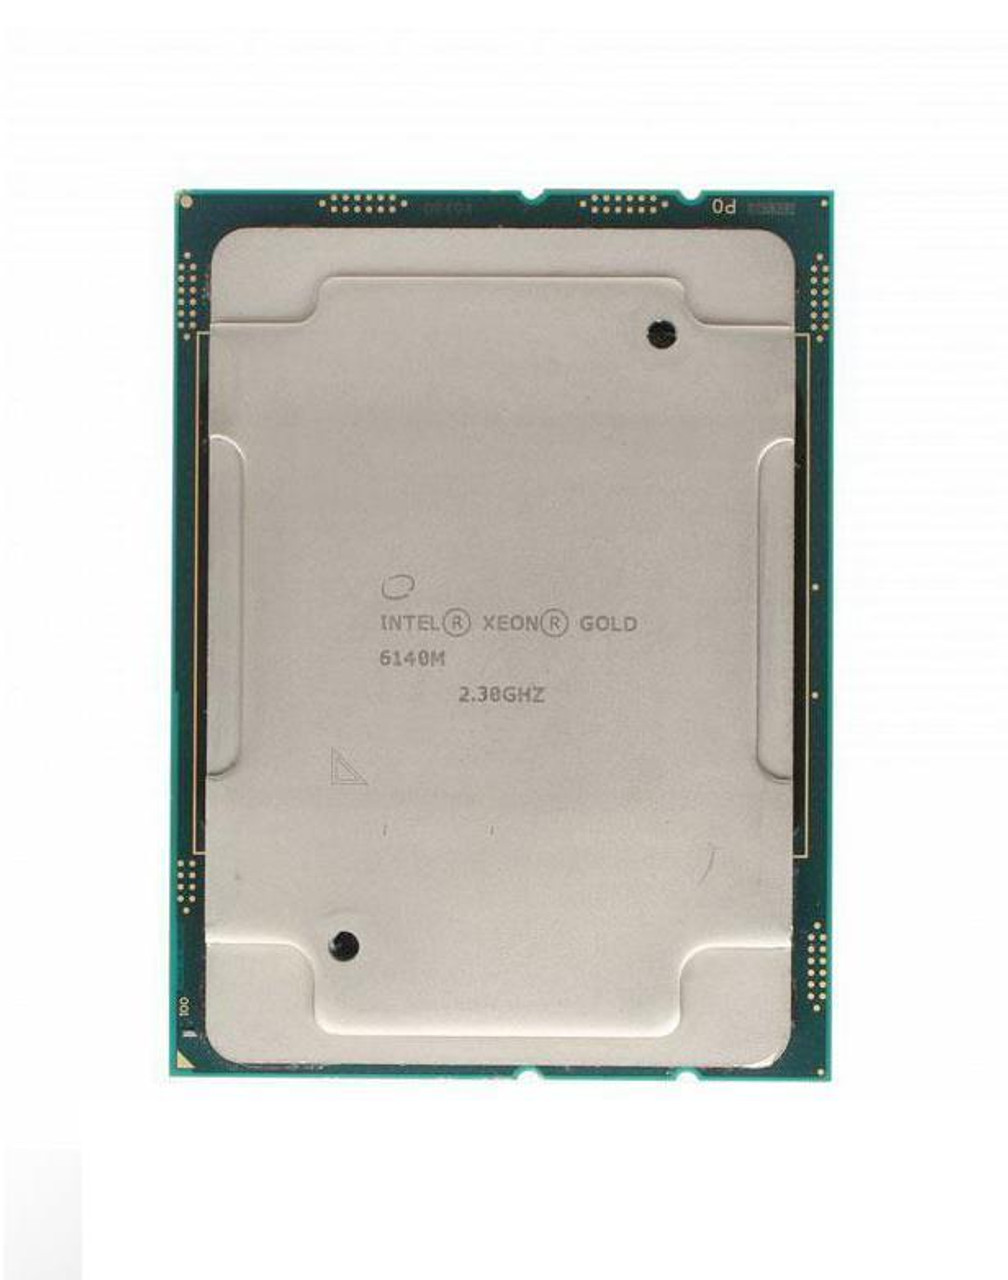 Cisco 2.30GHz 10.40GT/s UPI 24.75MB L3 Cache Socket LGA3647 Intel Xeon Gold 6140M 18-Core Processor Upgrade